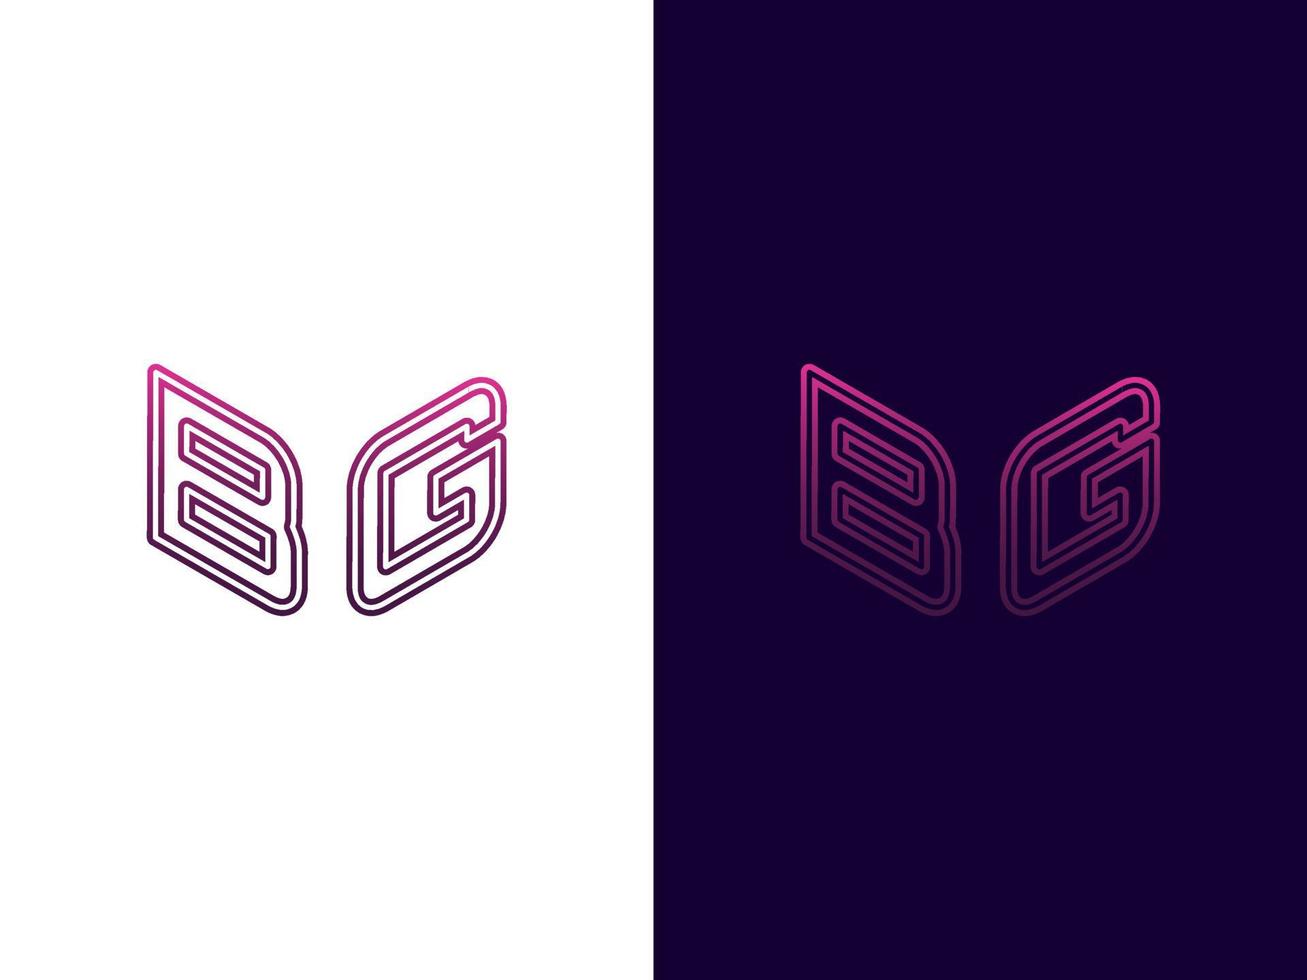 letra inicial bg diseño de logotipo 3d minimalista y moderno vector